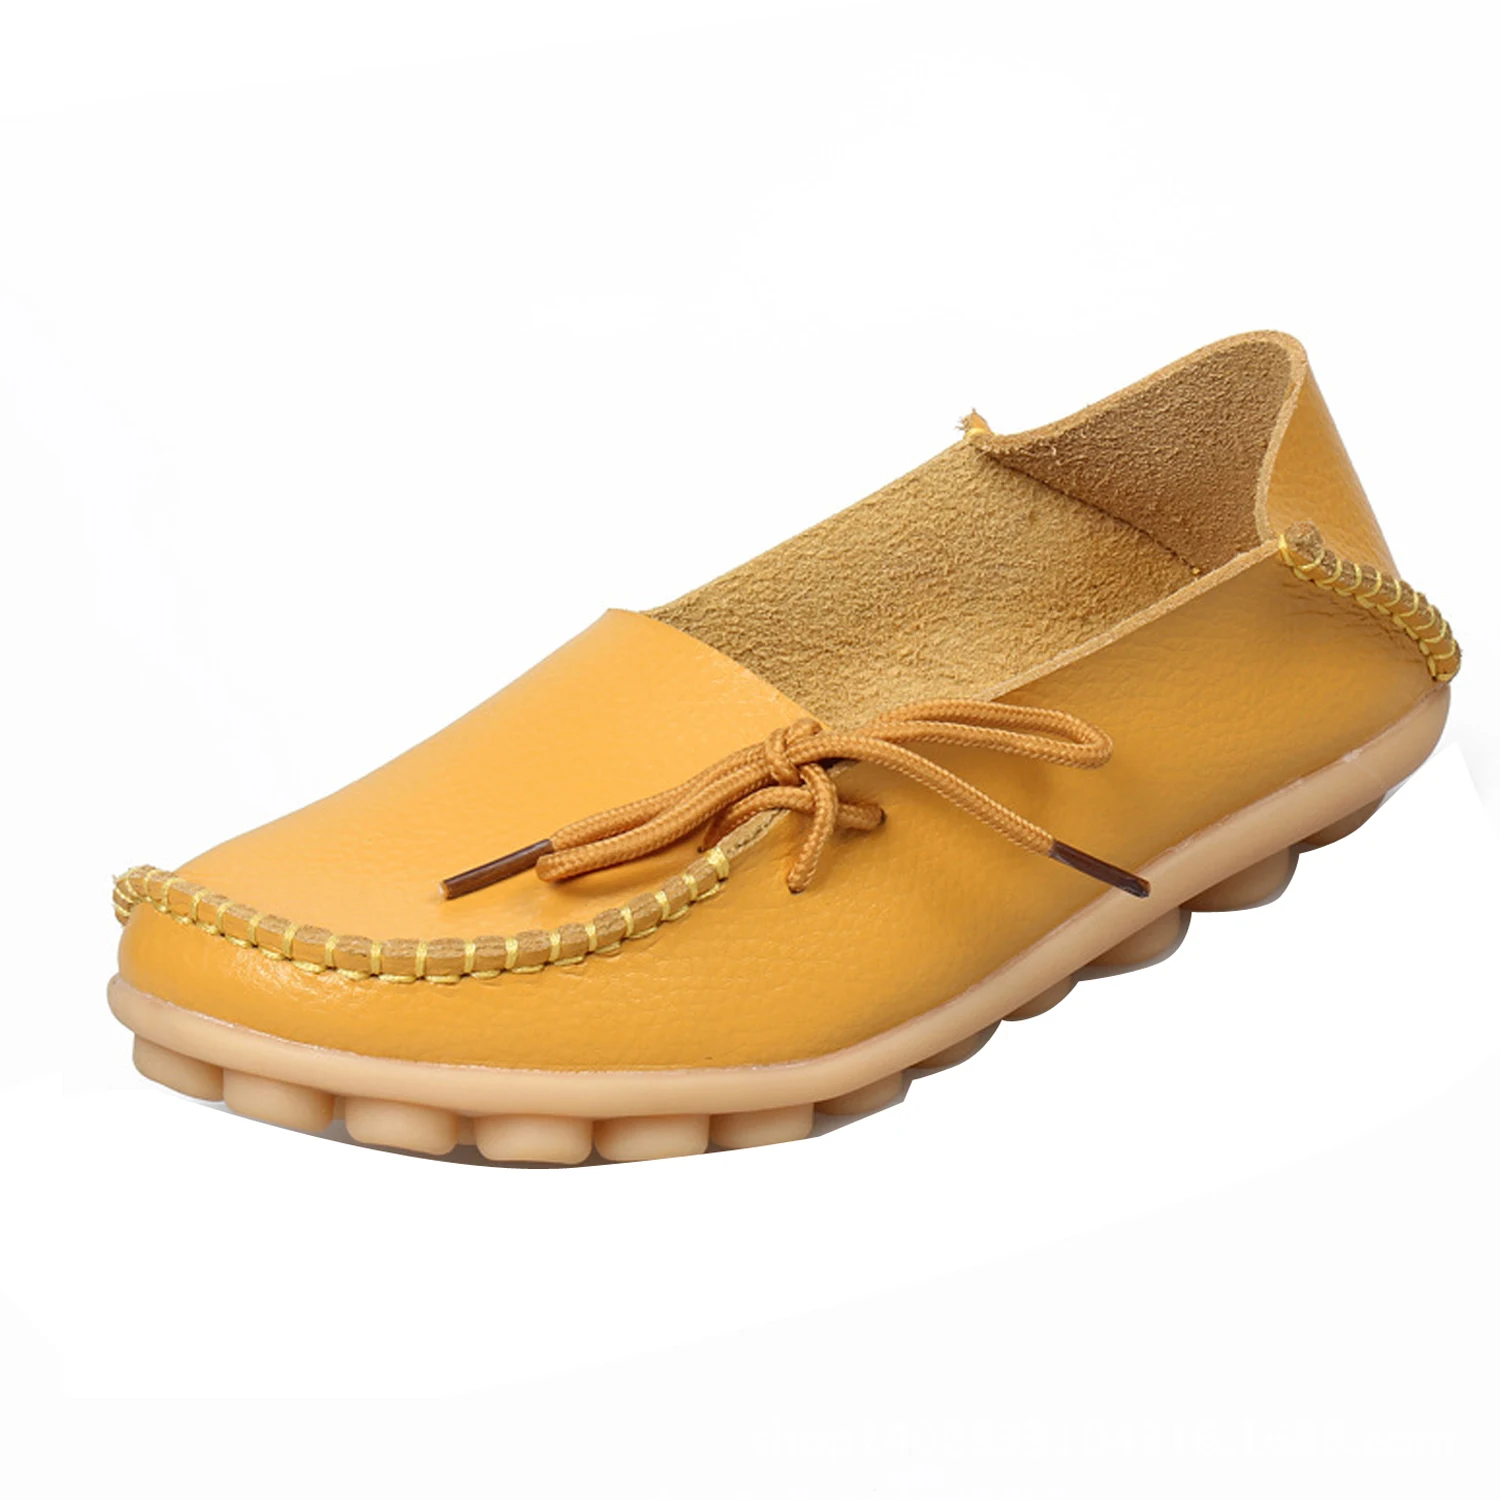 Gaorui/ г.; Srping; новые женские мокасины из искусственной кожи на плоской подошве; лоферы; женская повседневная обувь для вождения; лаконичная обувь на плоской подошве для отдыха - Цвет: Цвет: желтый